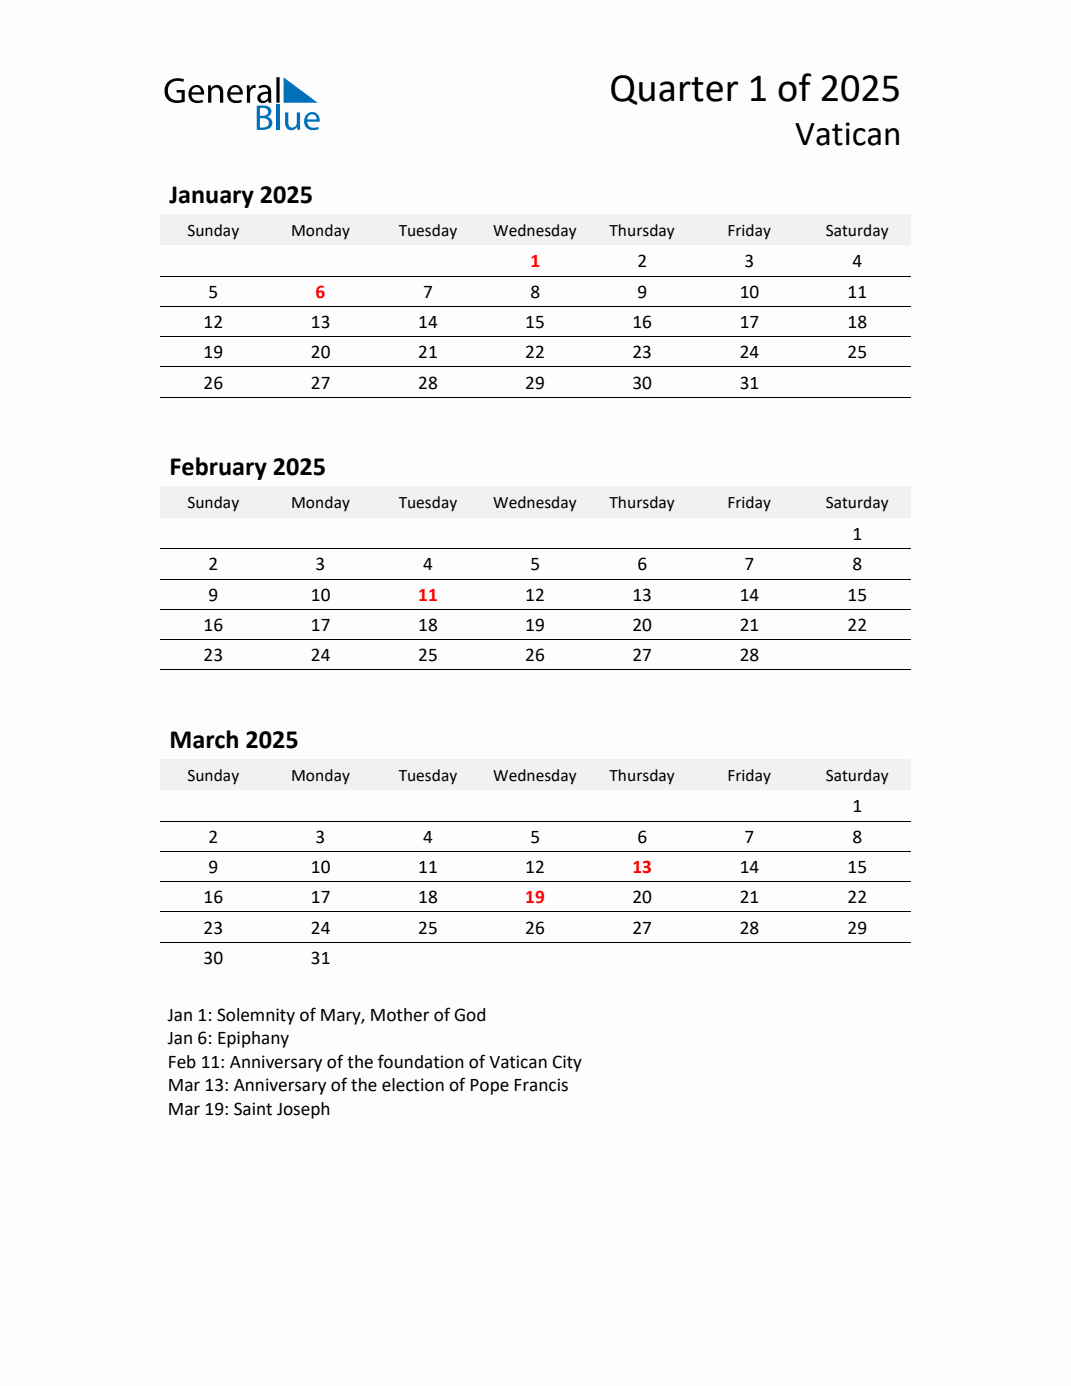 Q1 2025 Quarterly Calendar with Vatican Holidays